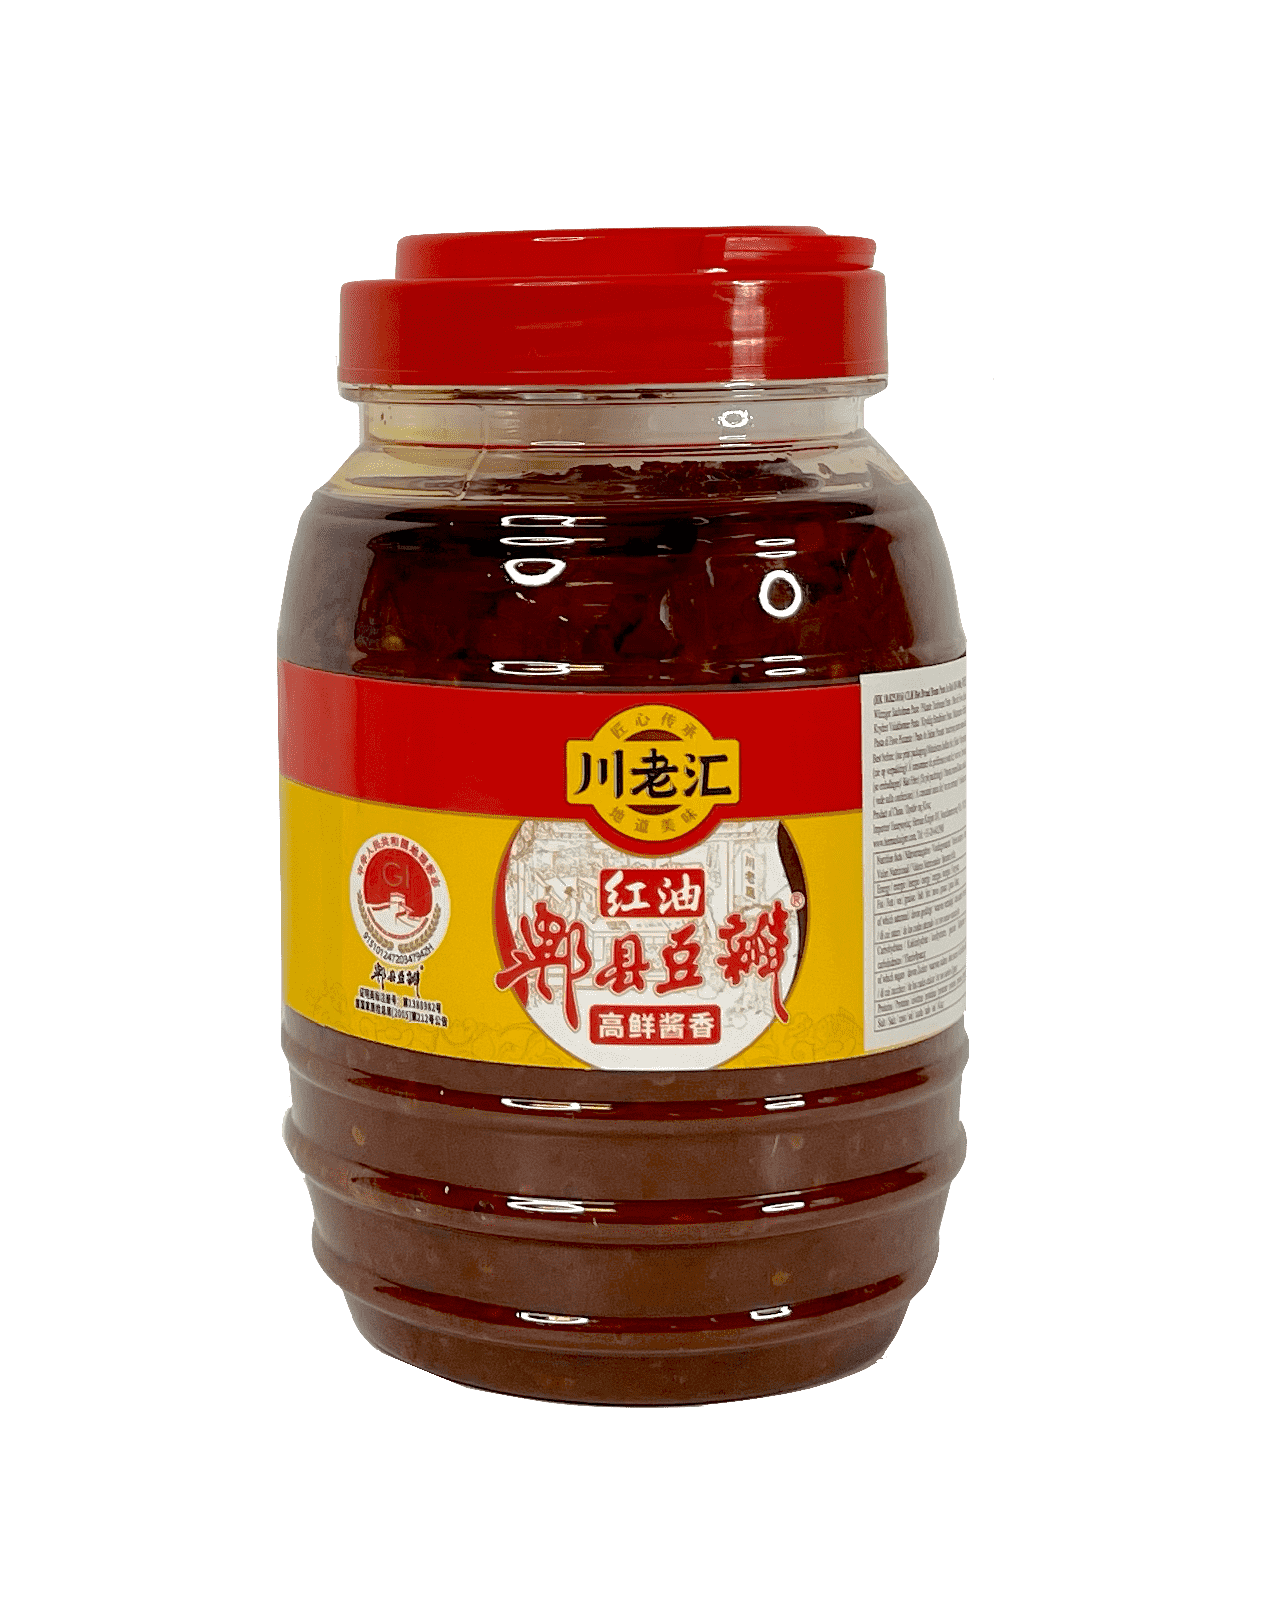 红油郫县豆瓣酱 1000g 川老汇 中国